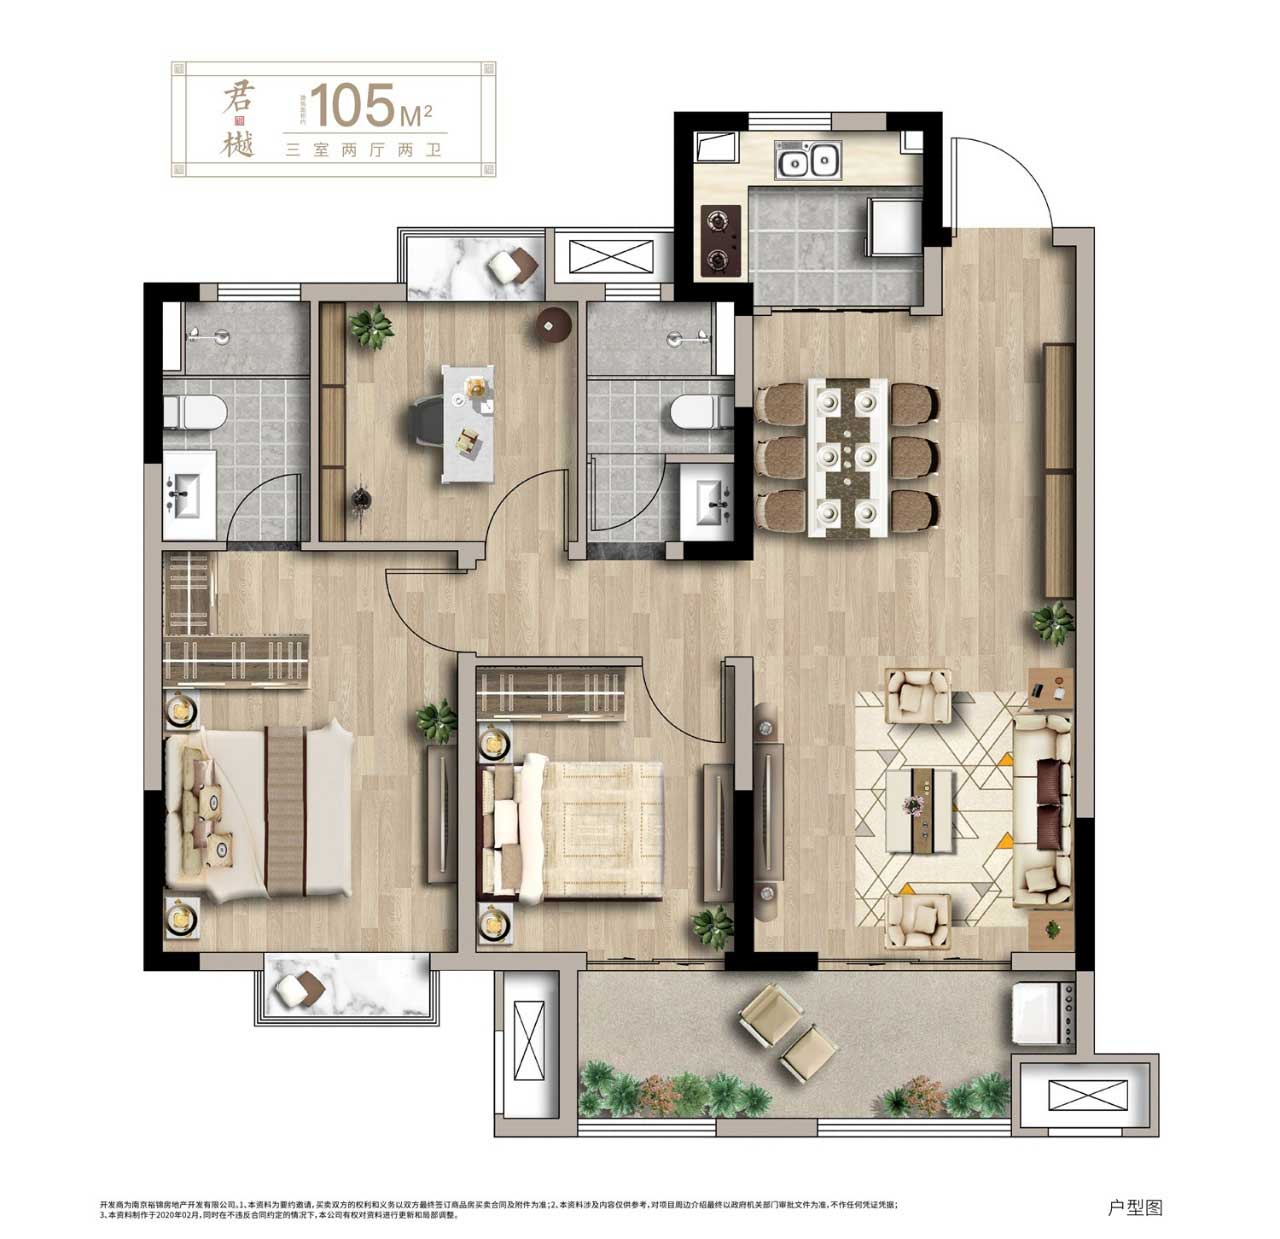 孔雀城紫樾澜庭户型,三室两厅两卫